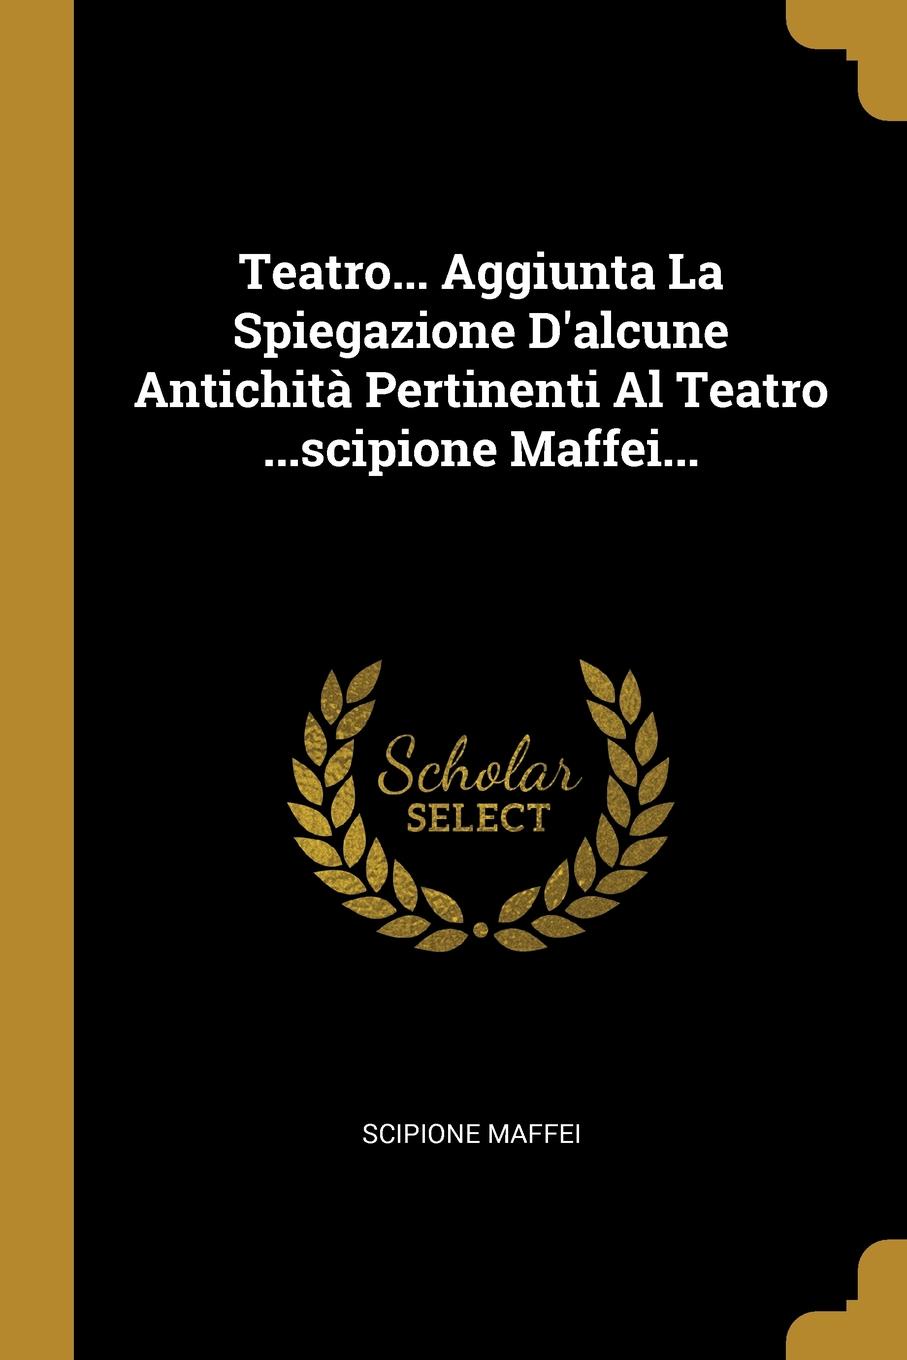 Teatro... Aggiunta La Spiegazione D.alcune Antichita Pertinenti Al Teatro ...scipione Maffei...